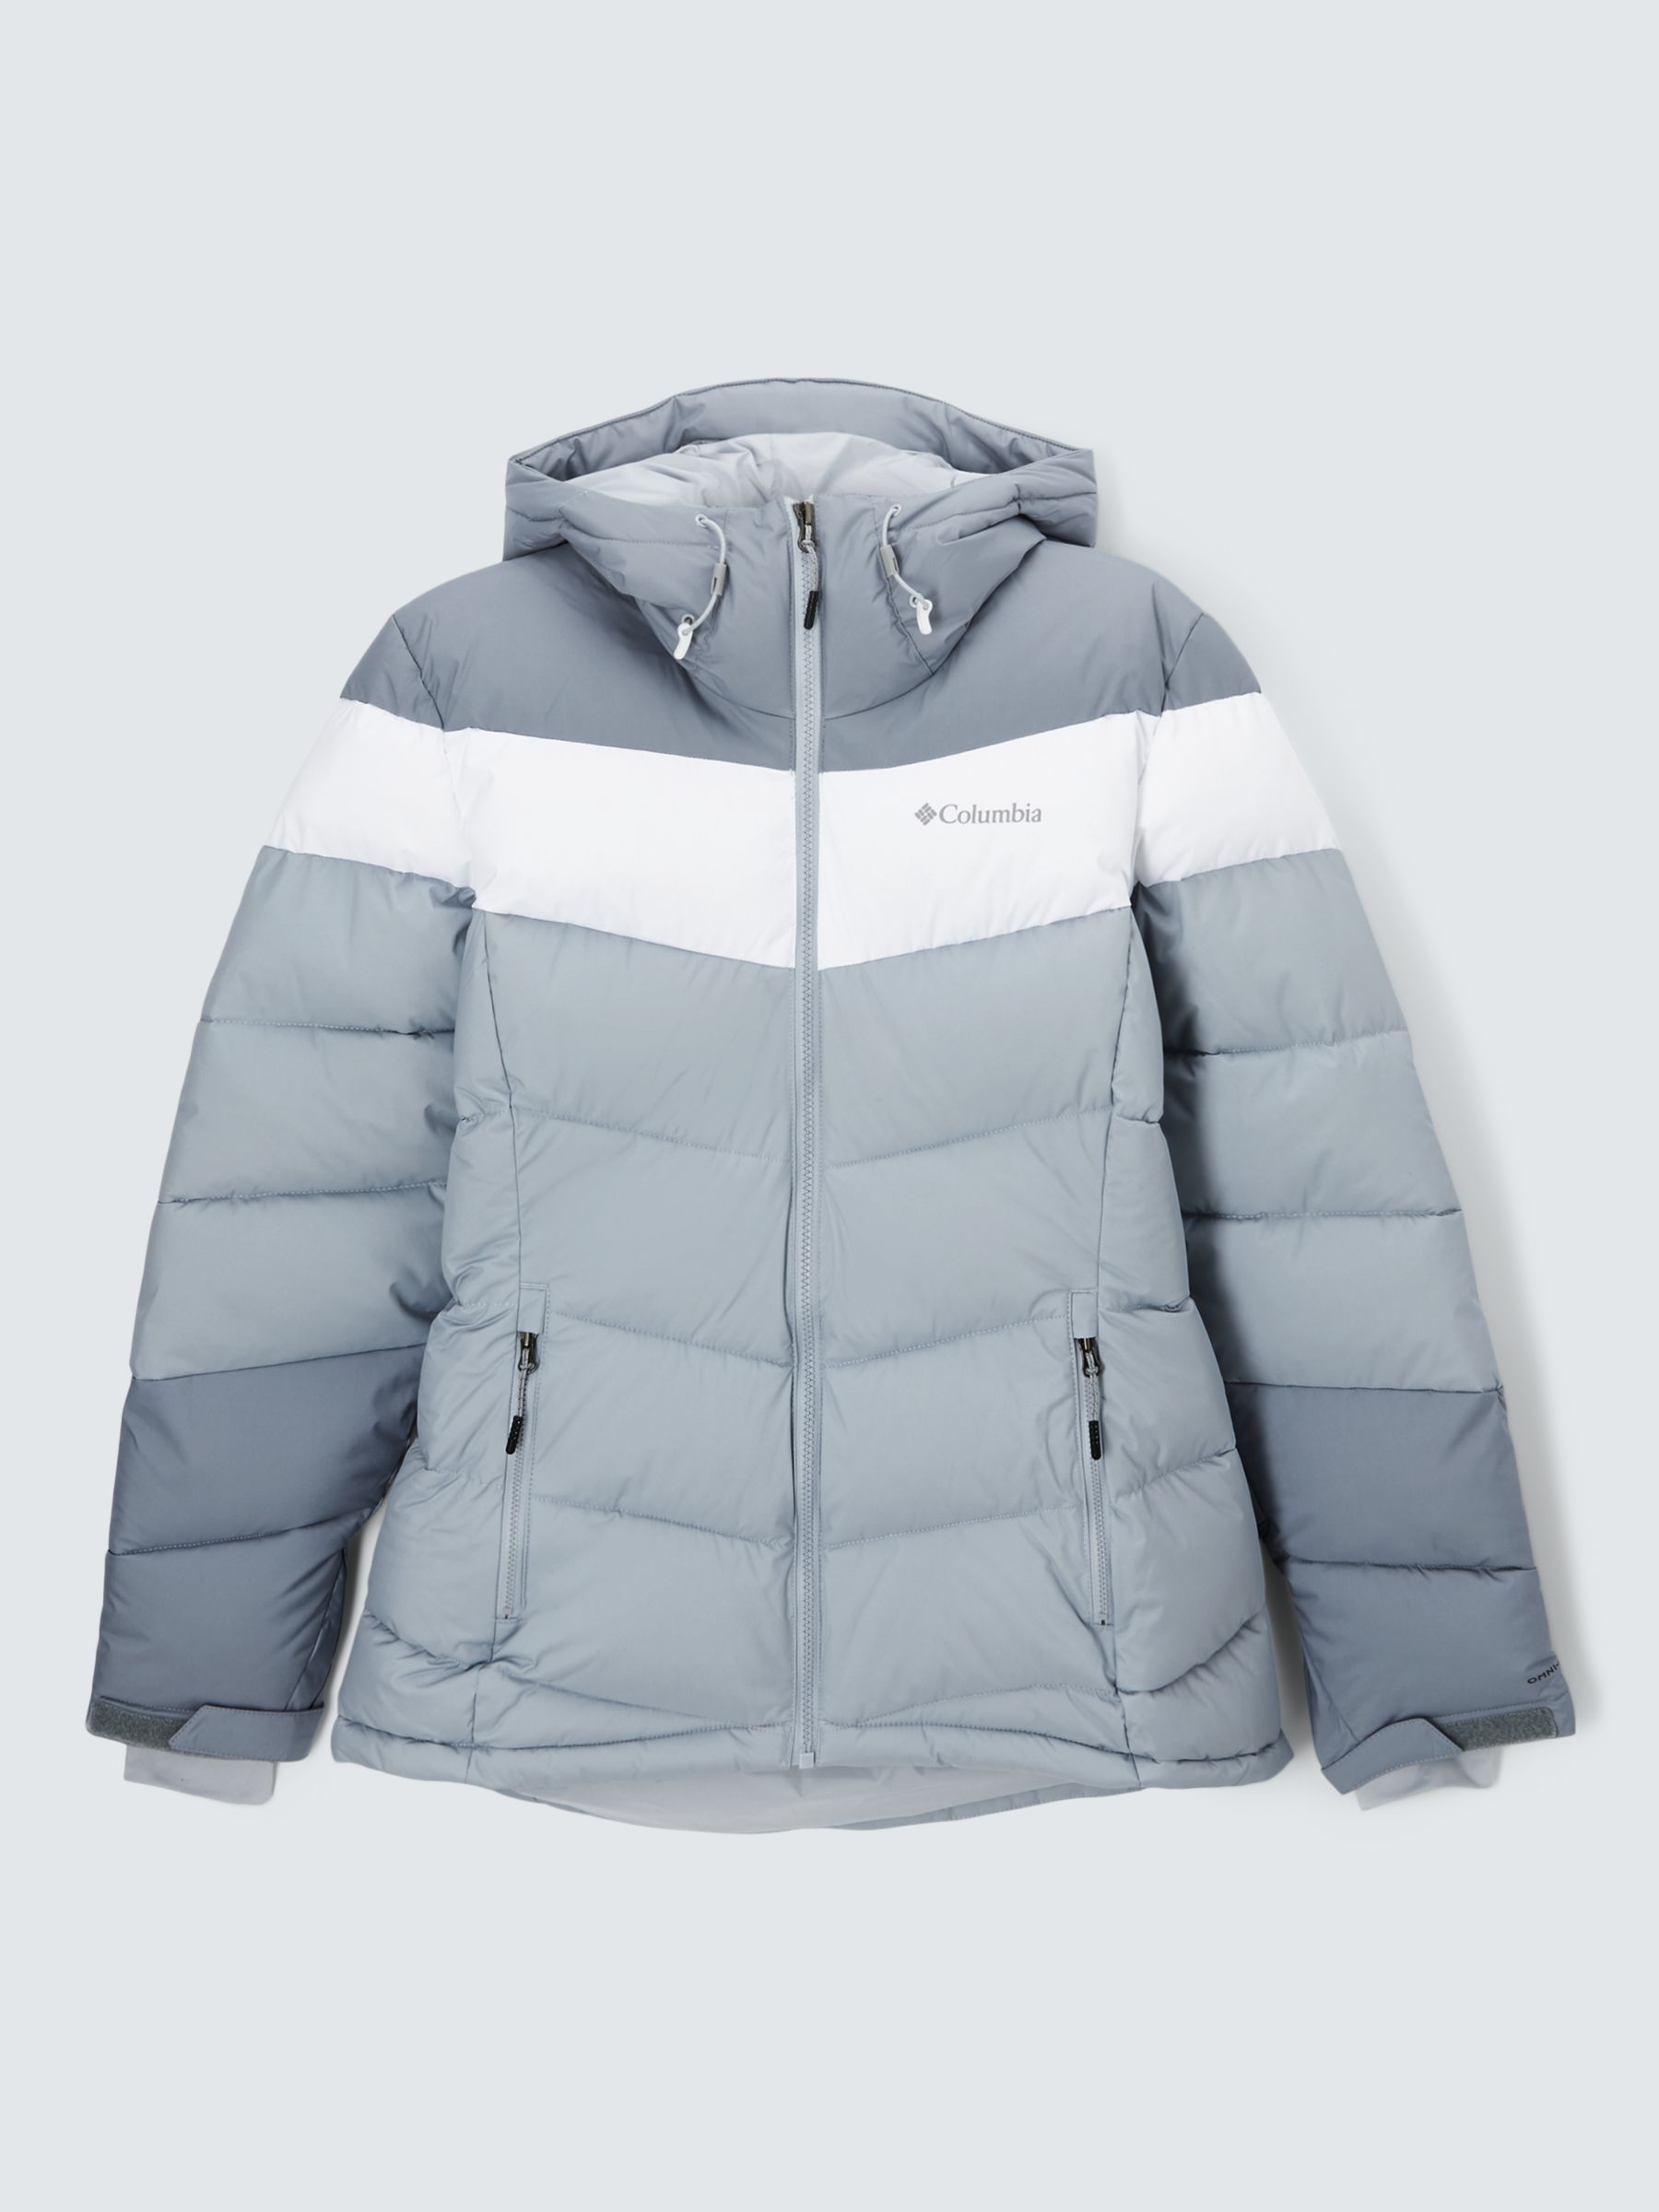 Columbia Abbott Women's Waterproof Ski Jacket, Cirrus Grey/White, S